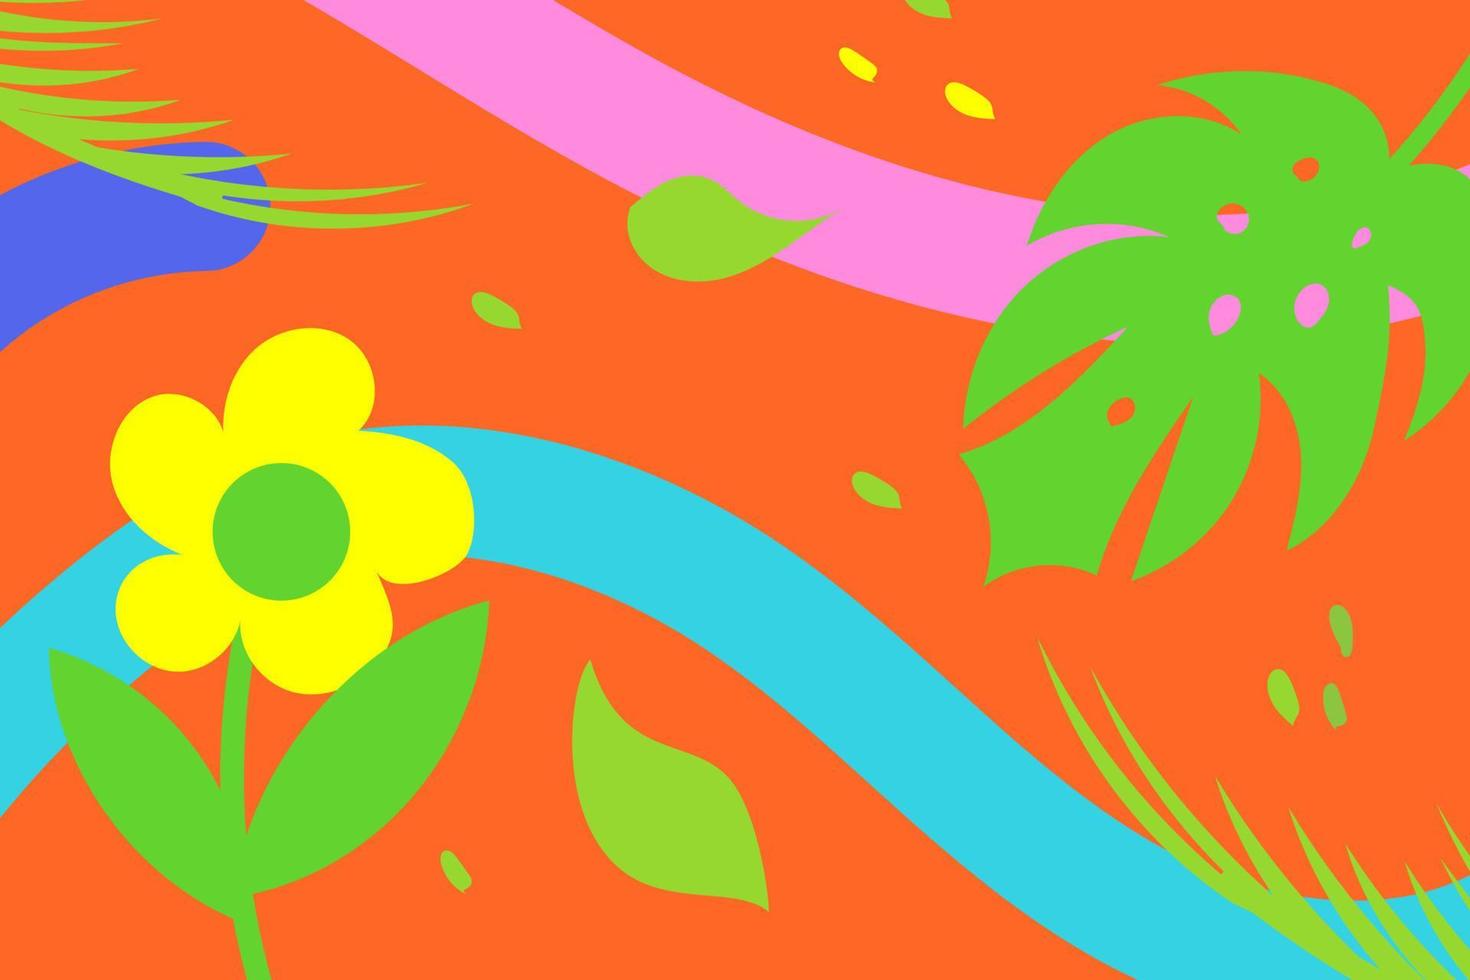 växt och blomma, natur, botanik mönster med ljus färger bakgrund. platt design illustration vektor eps10